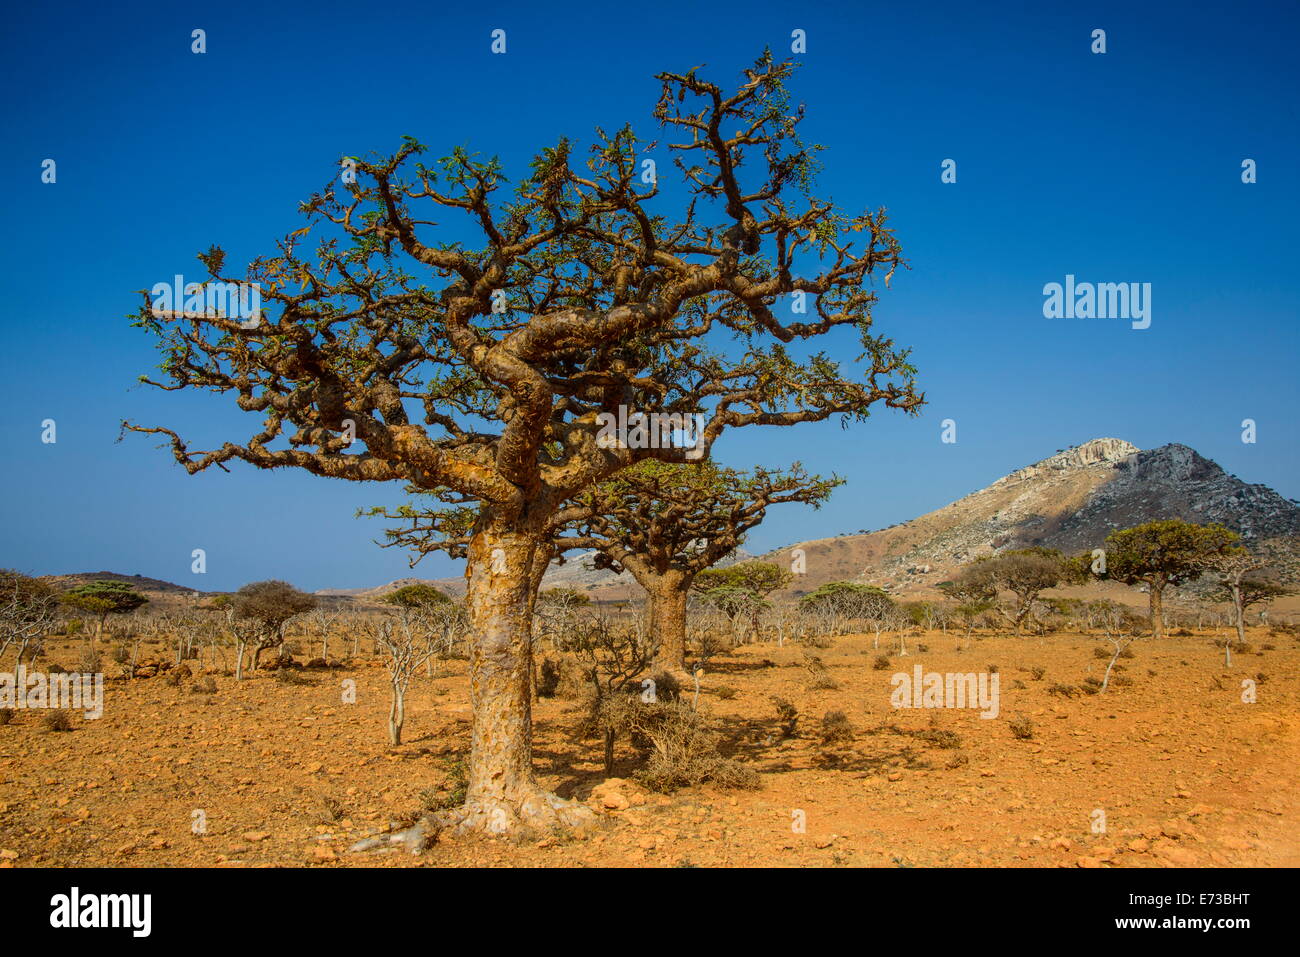 Alberi di frankincense (Boswellia elongata), Homil Area Protetta, isola di Socotra, Sito Patrimonio Mondiale dell'UNESCO, Yemen, Medio Oriente Foto Stock